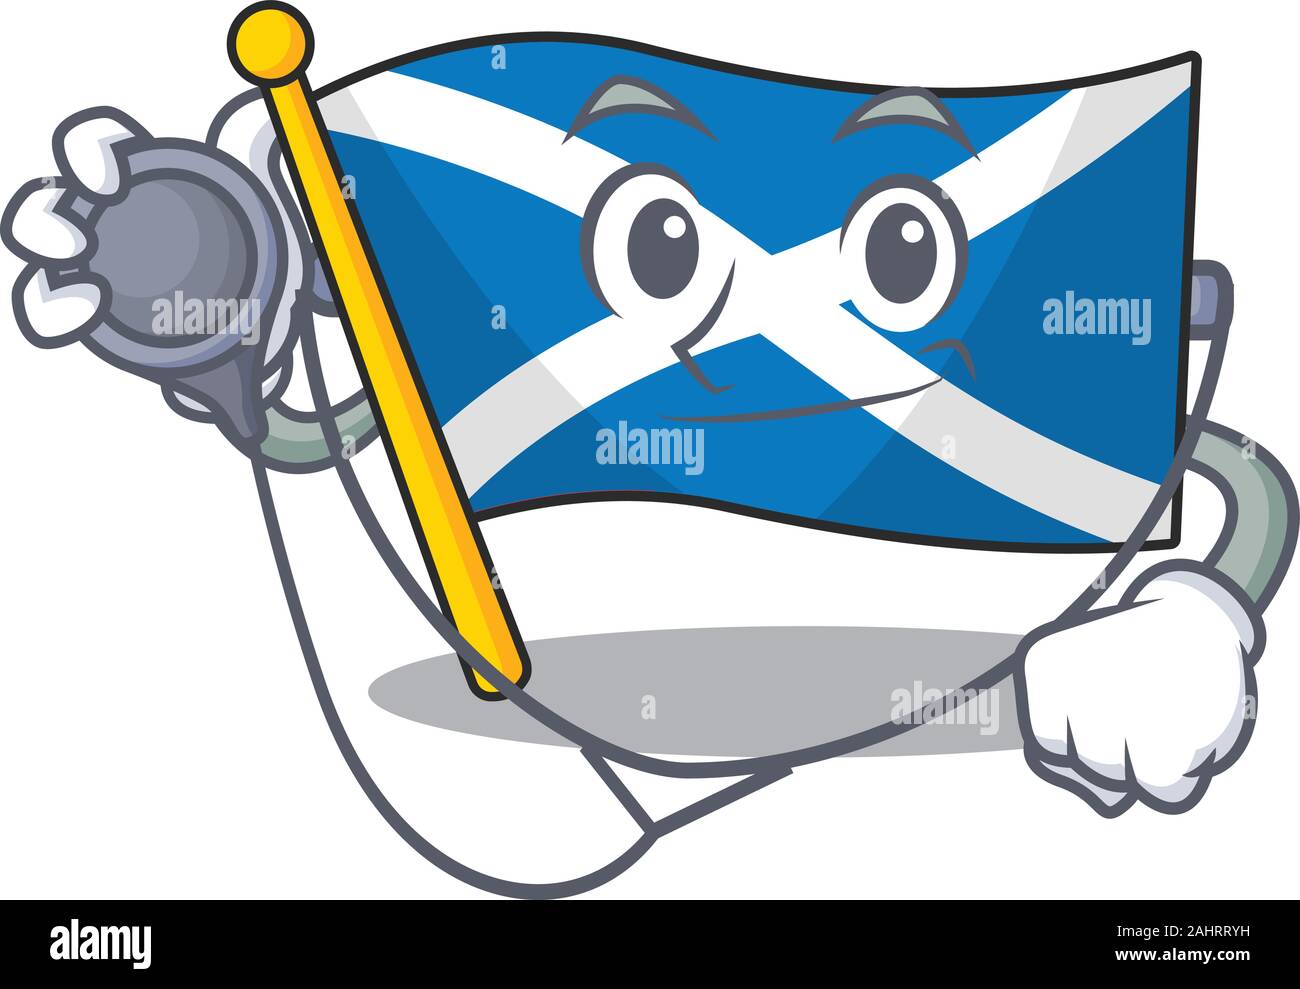 Faites défiler l'Ecosse drapeau mignon personnage dans un cabinet médical avec des outils Illustration de Vecteur